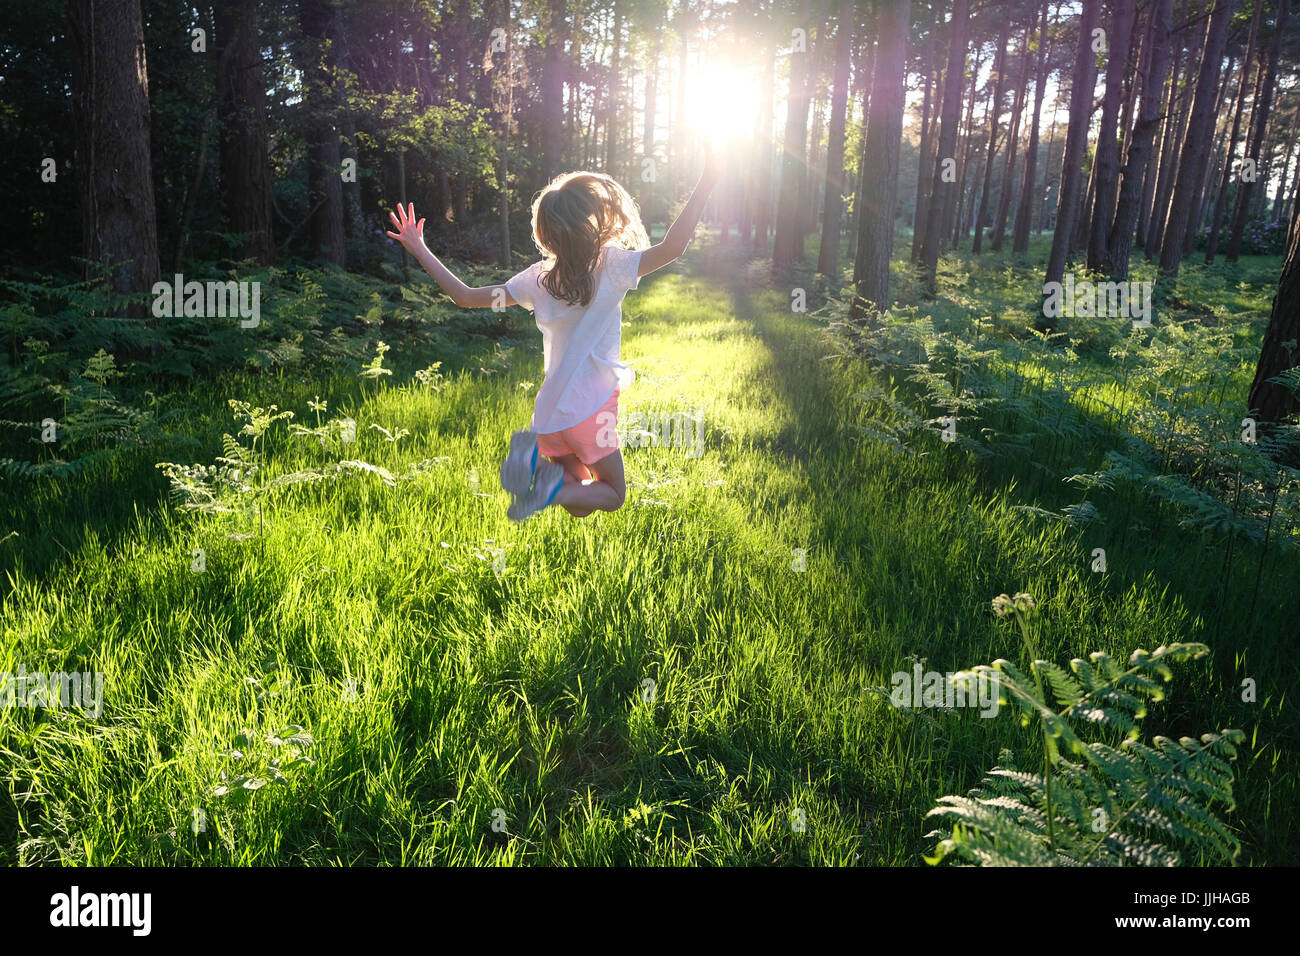 Ein junges Mädchen springen vor Freude in einem sonnendurchfluteten Wald. Stockfoto